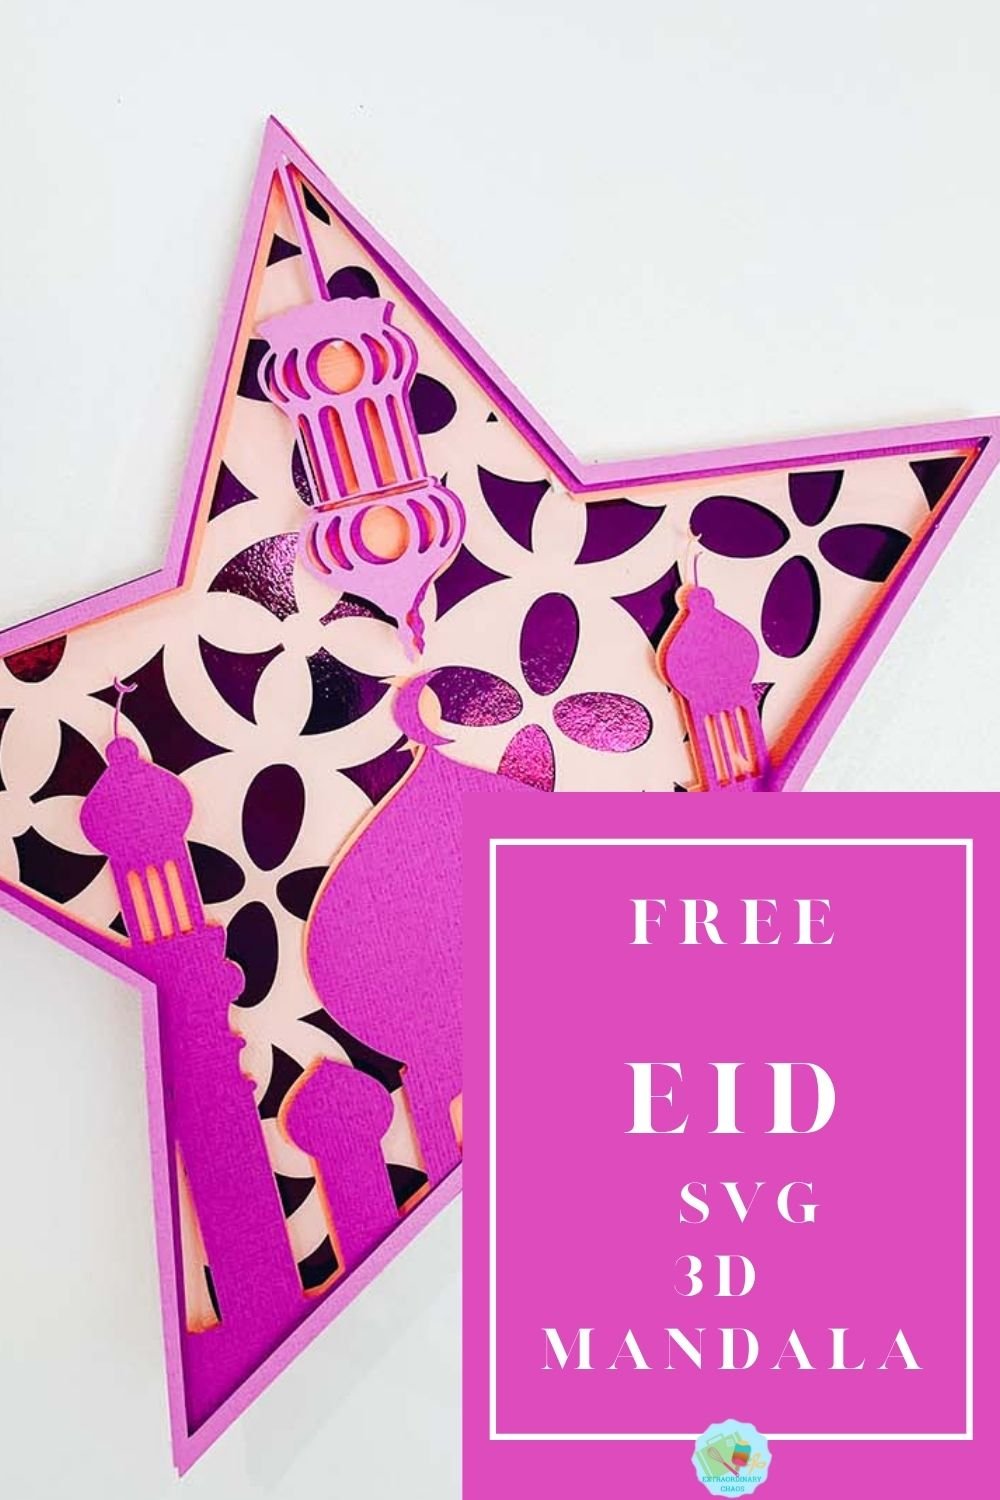 Free SVG Eid Mandala